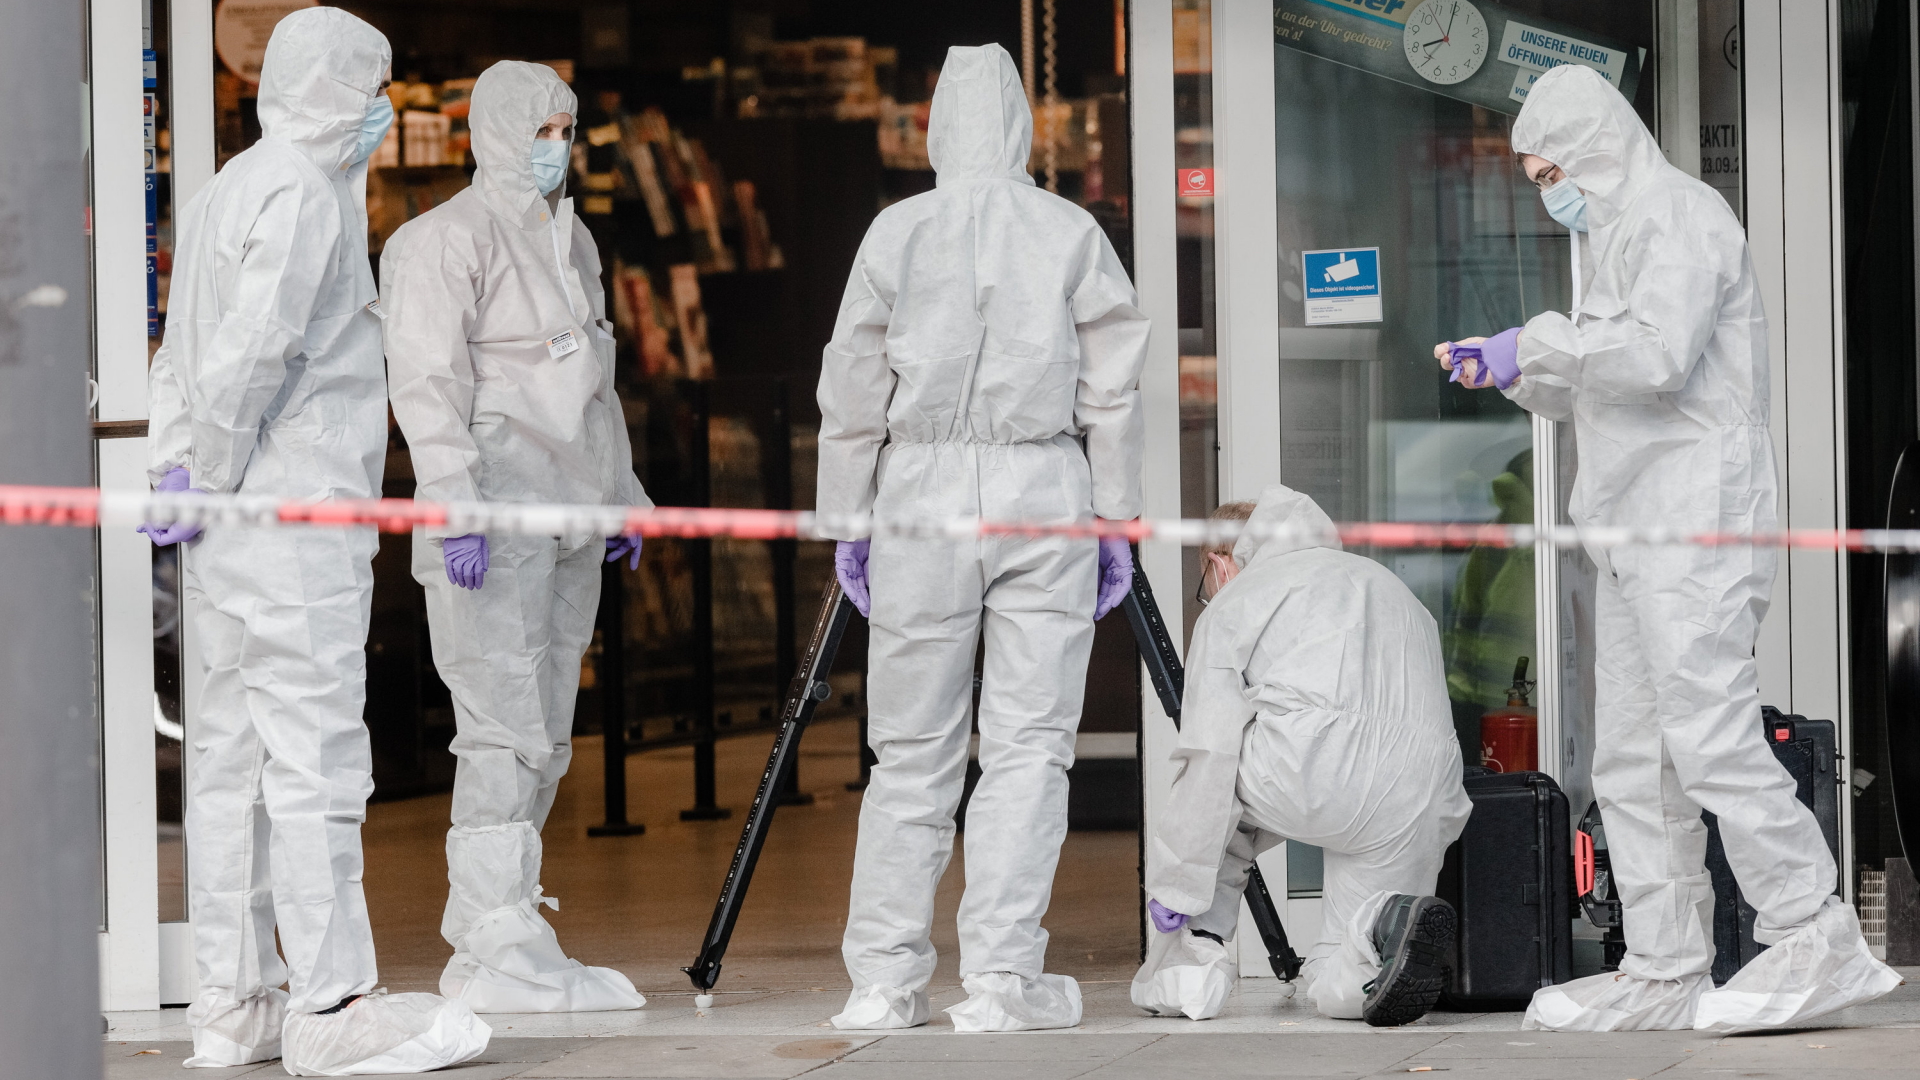 Mitarbeiter der Spurensicherung untersuchen nach einer Messerattacke mit einem Toten den Tatort in dem Supermarkt im Hamburger Stadtteil Barmbek. | Bildquelle: dpa